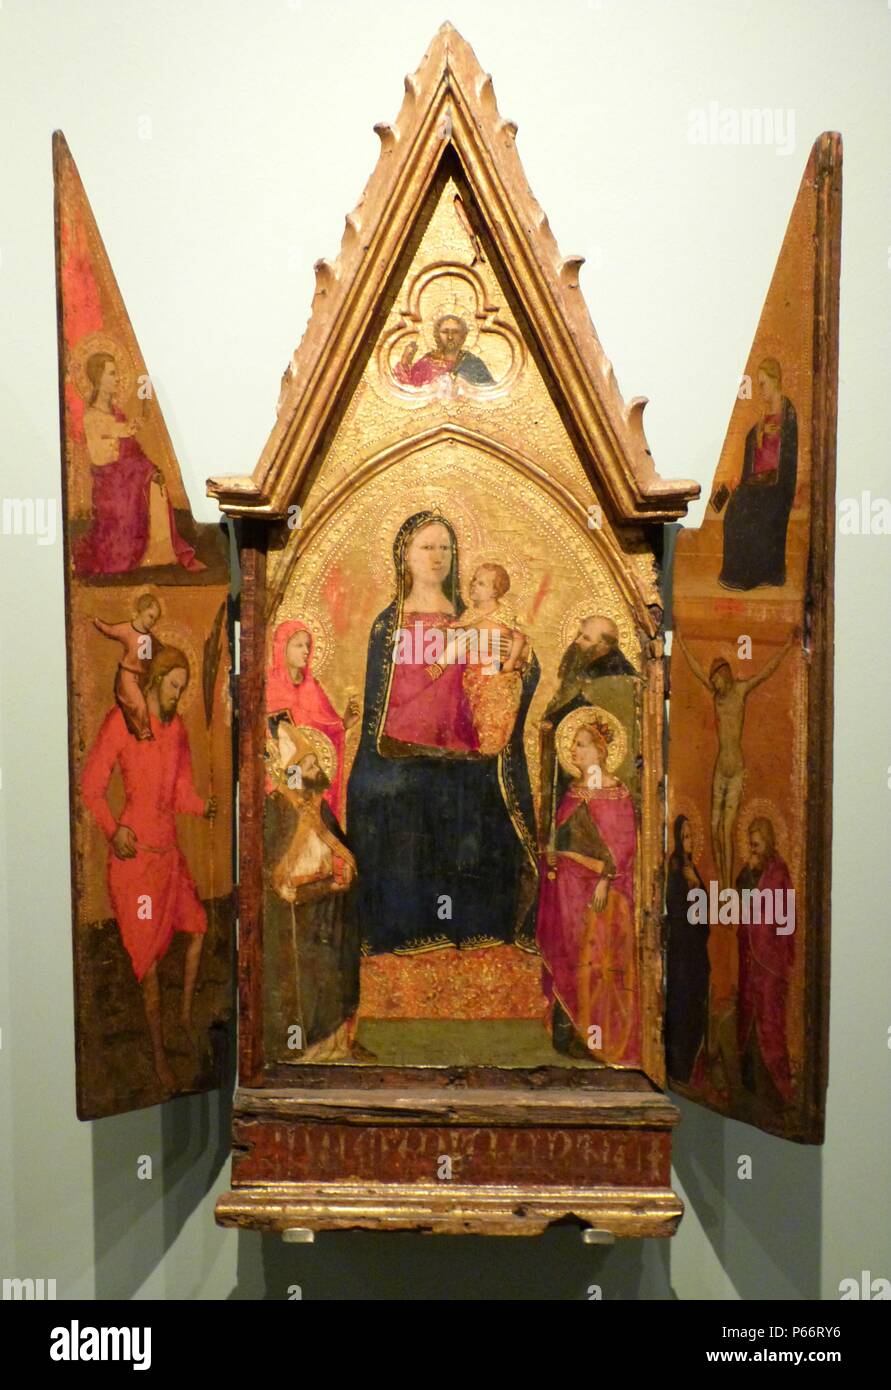 La foglia centrale raffigura la Vergine col Bambino in trono con quattro santi. Le foglie laterali raffigurano l'Annunciazione e San Cristoforo e la crocifissione. Trittico del XIV secolo. Foto Stock